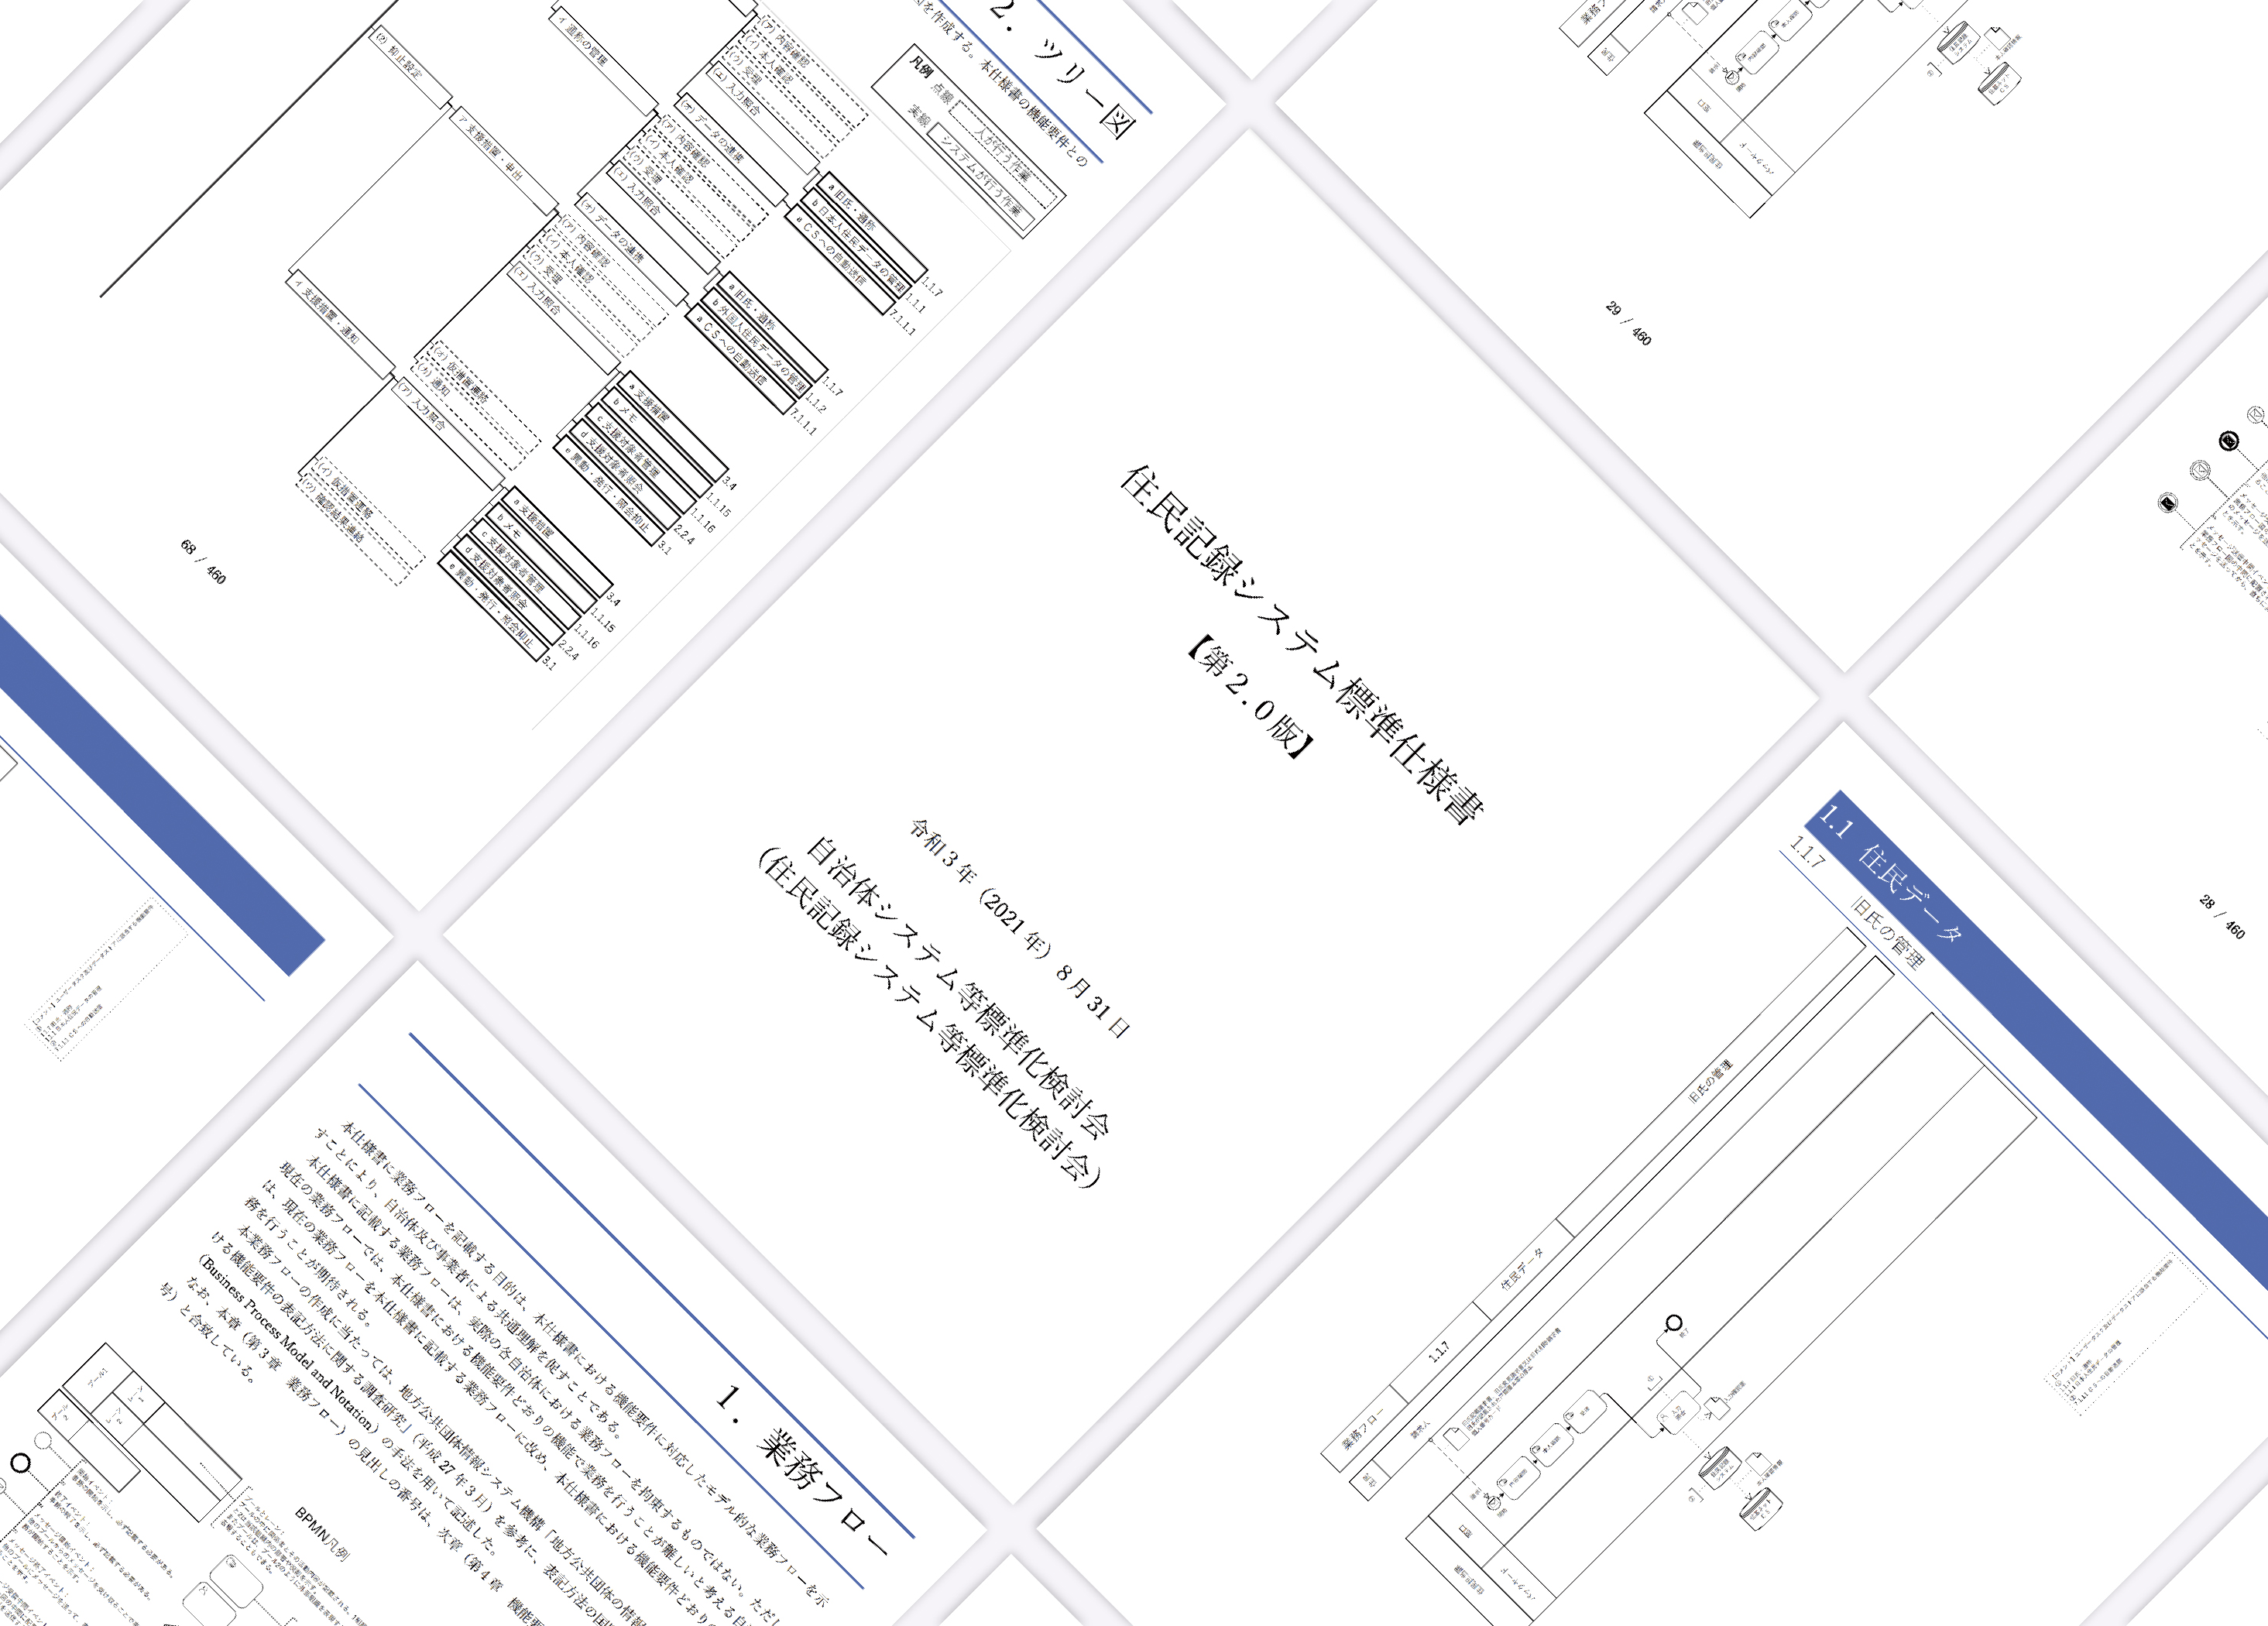 標準仕様書のイメージ図。標準仕様書の各ページがタイル状に斜めに配置されている。中央には住民記録システム標準仕様書が見える。